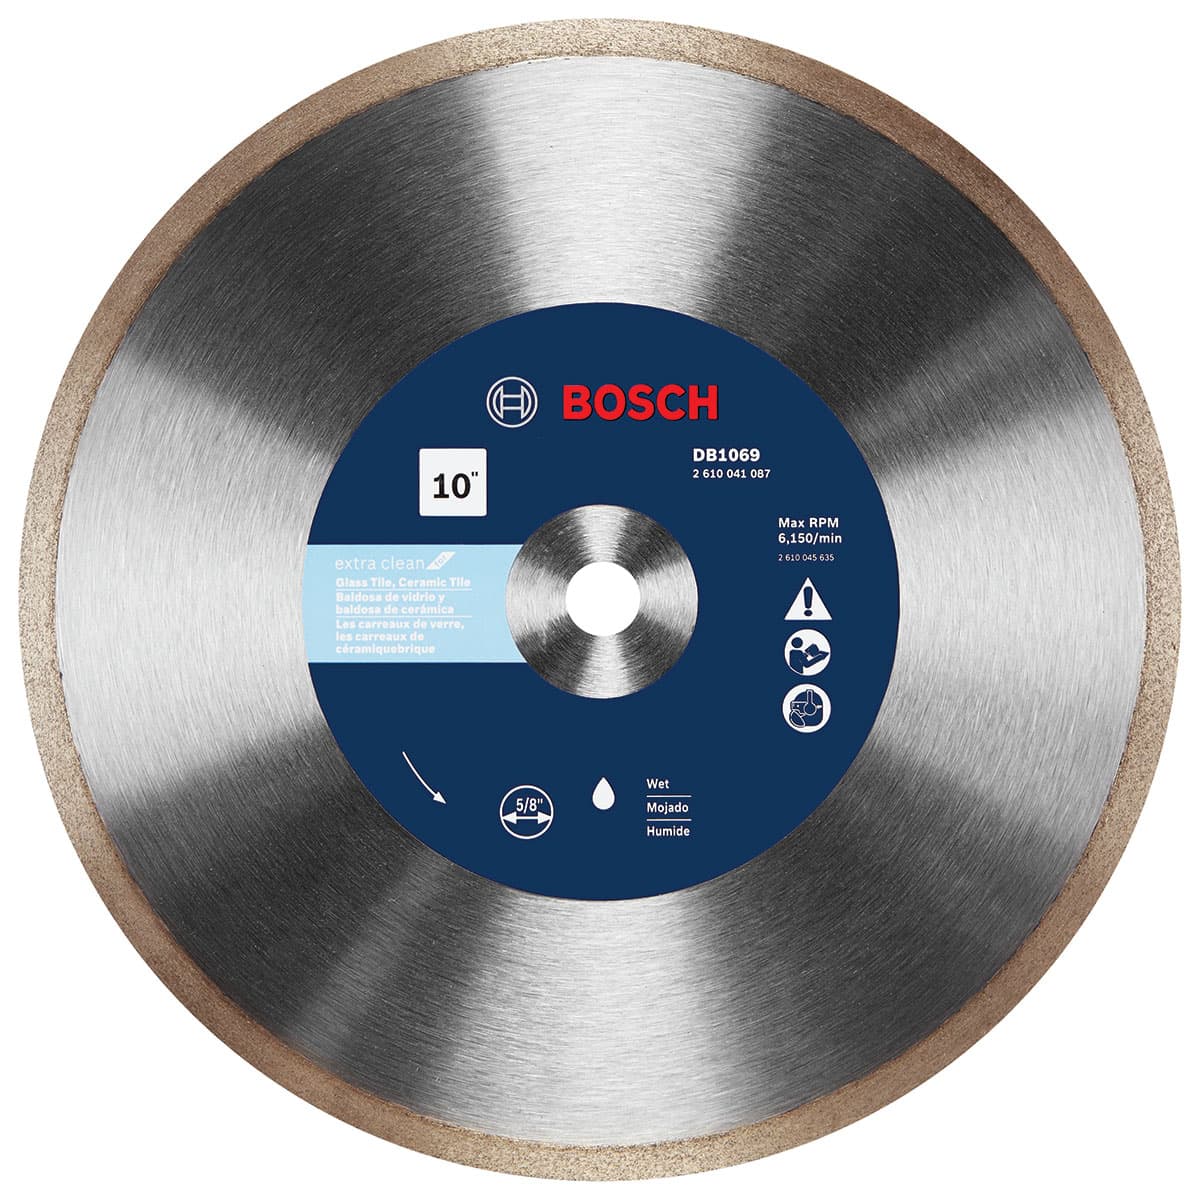 Bosch DB1069